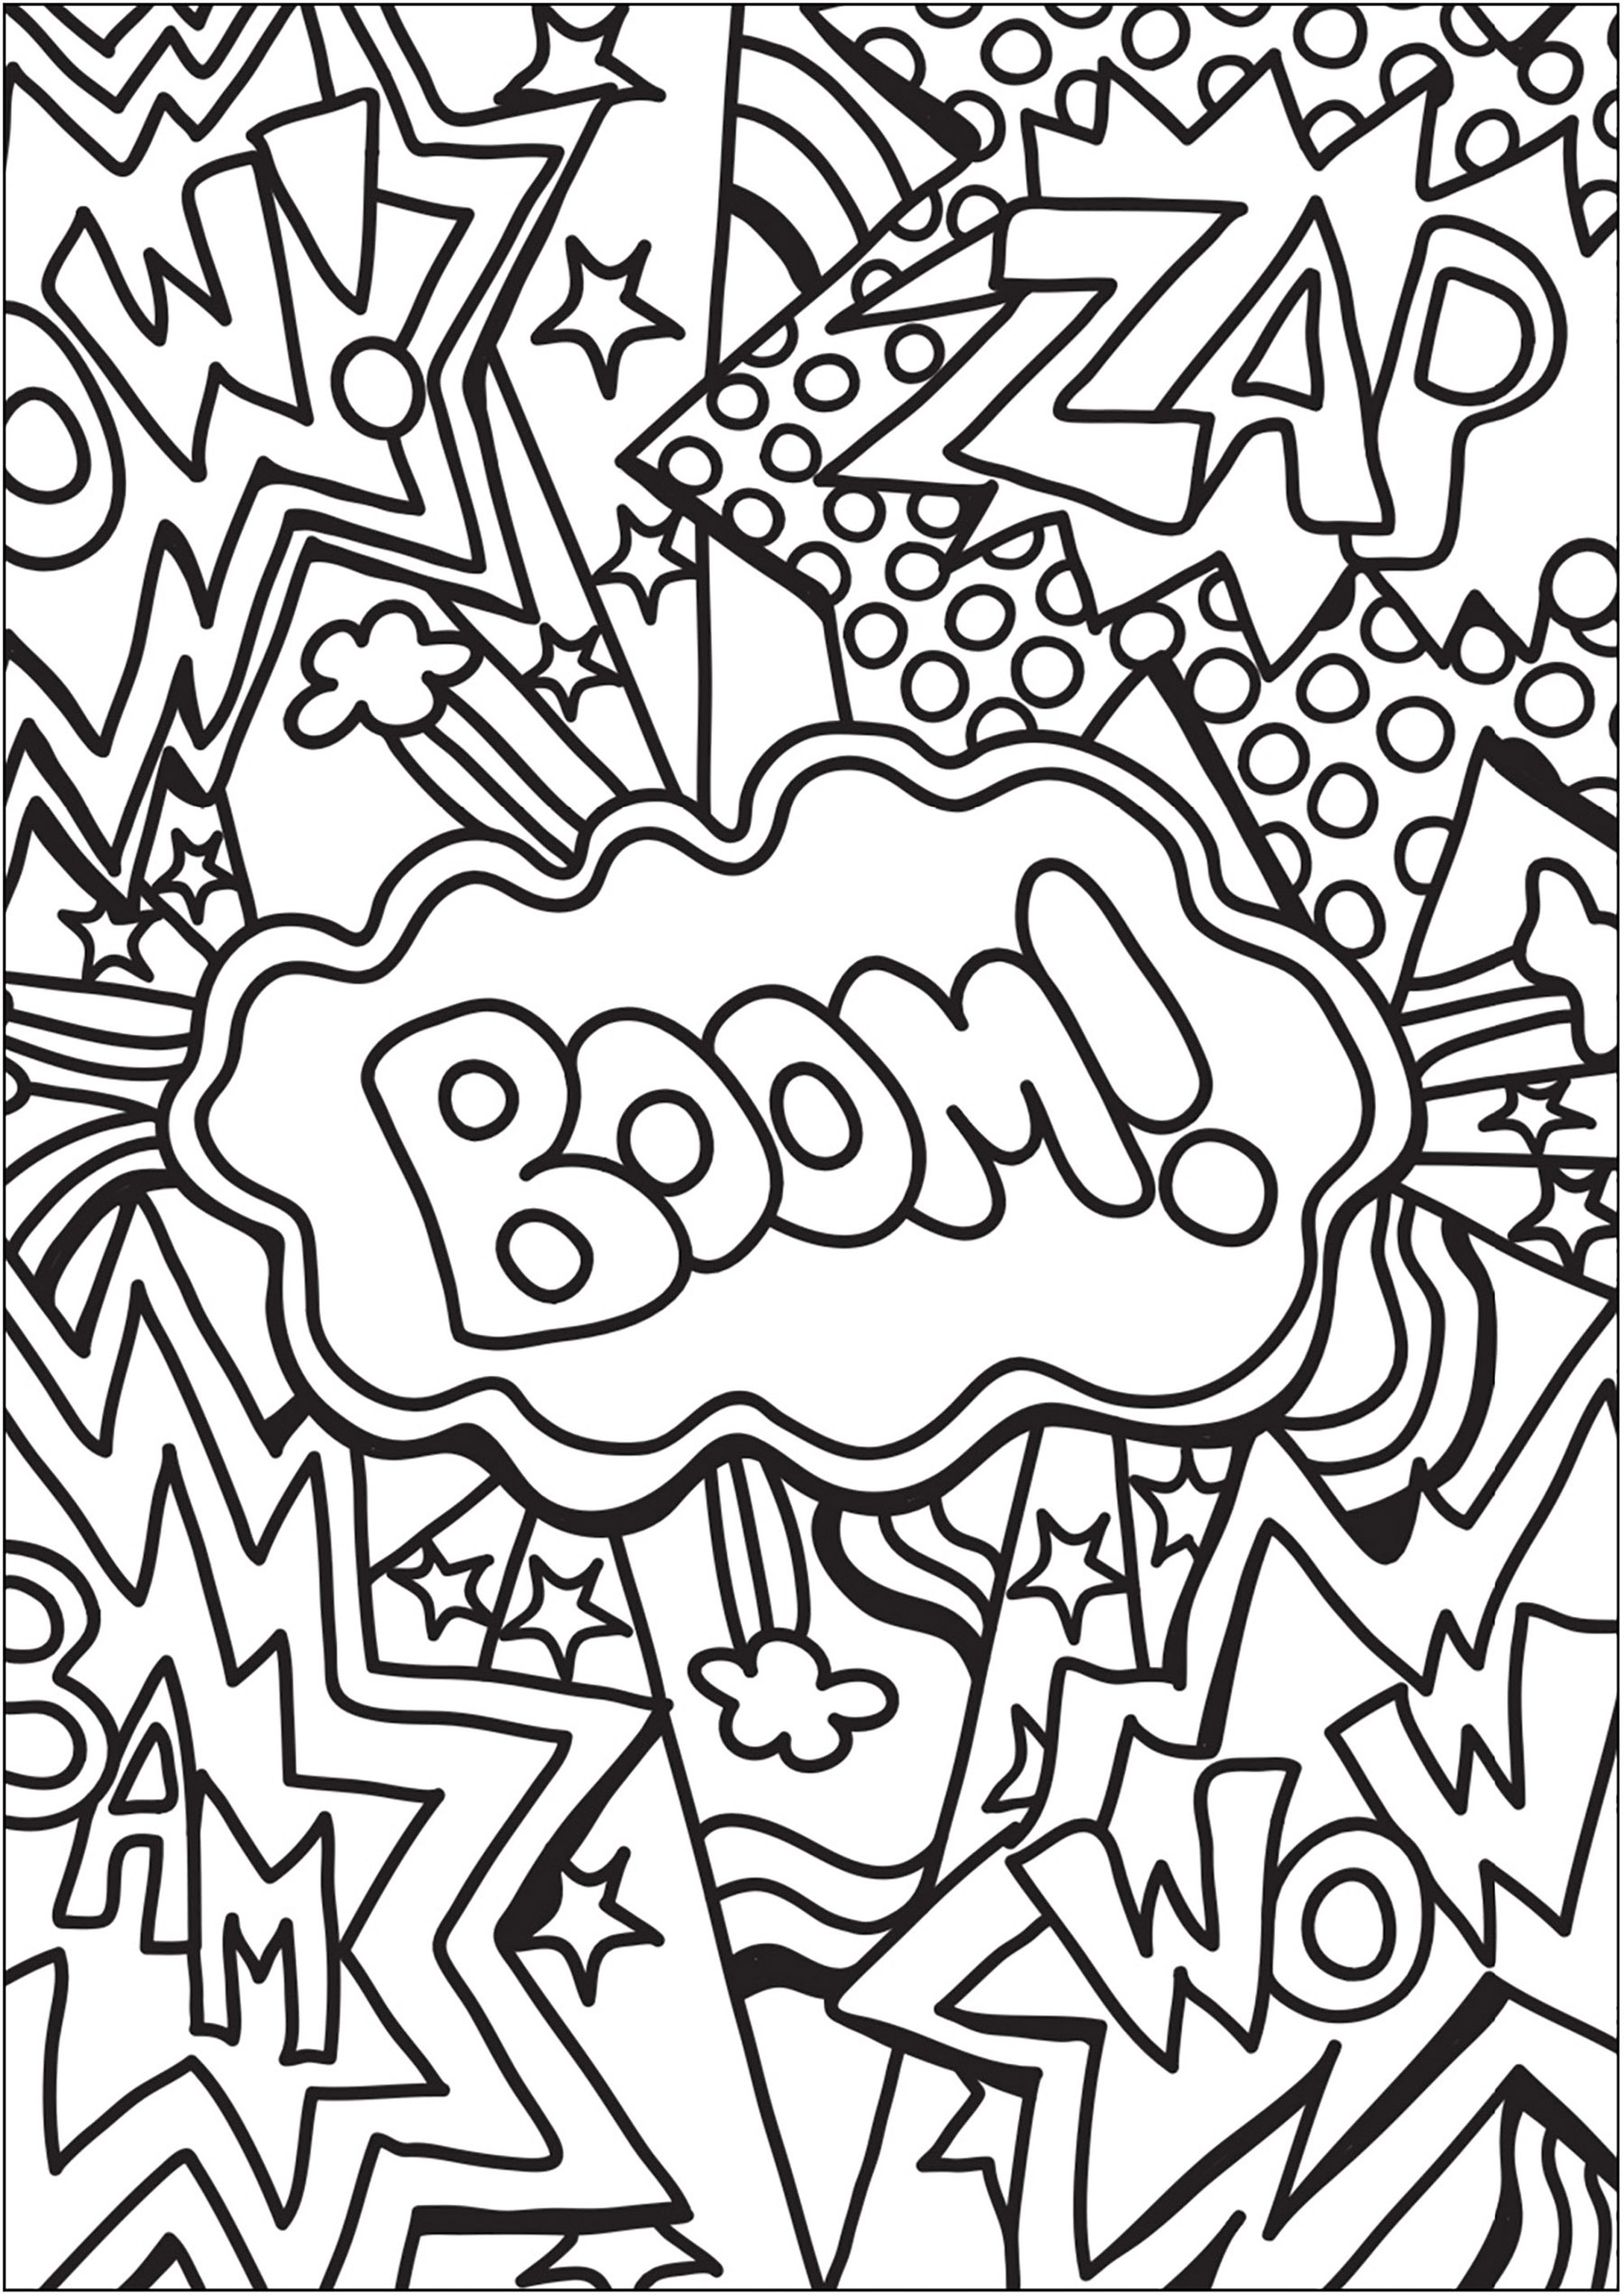 Doodle avec mots de Bande-dessinées et Comic books. Boom, Zap, Wow, Bam ...